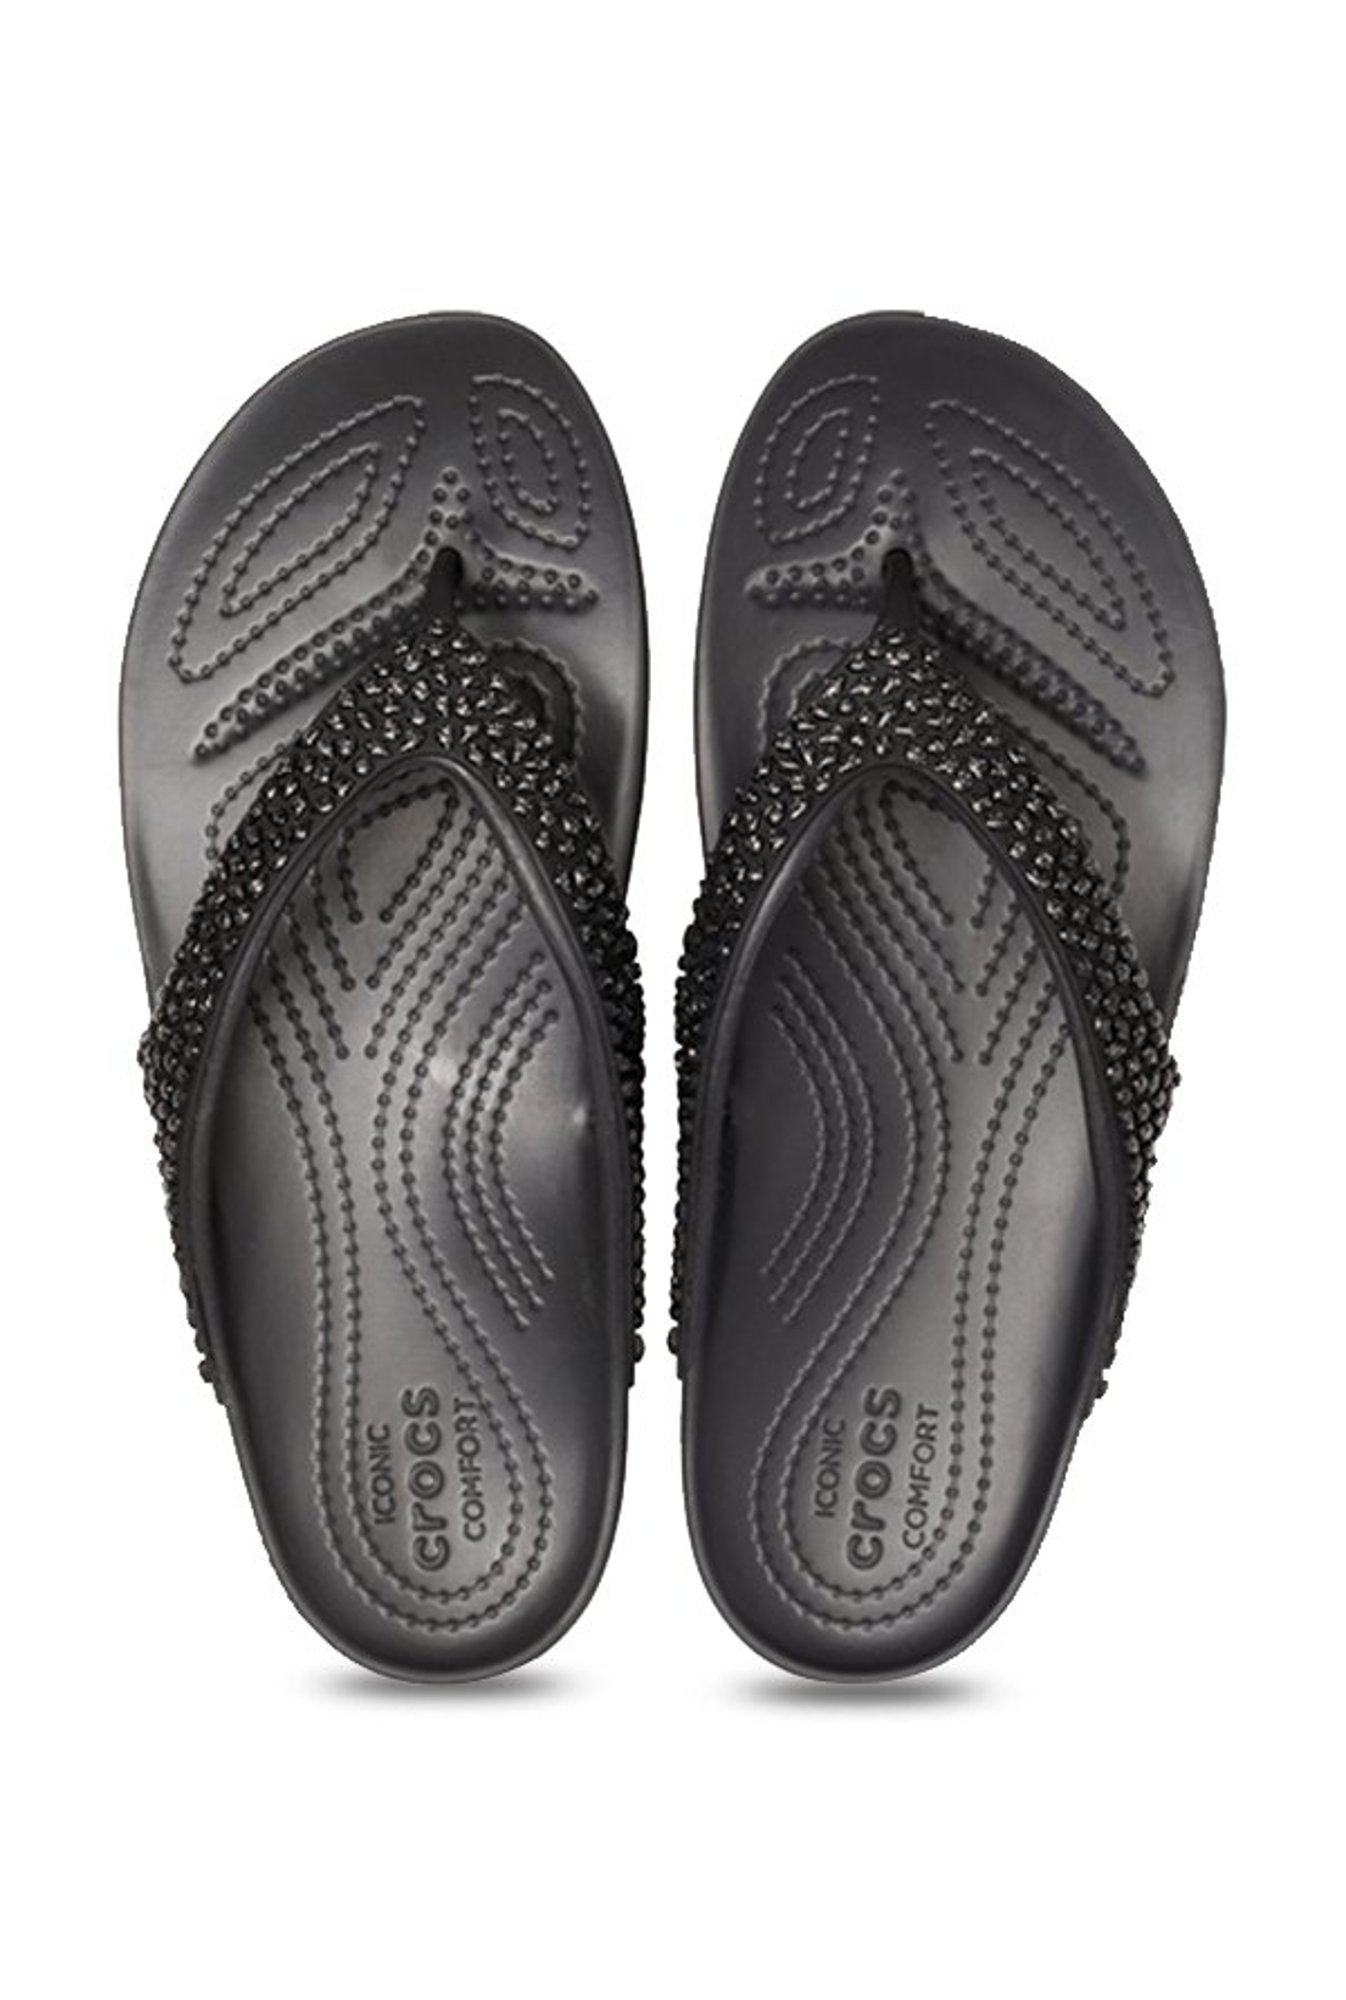 crocs kadee flip flop black